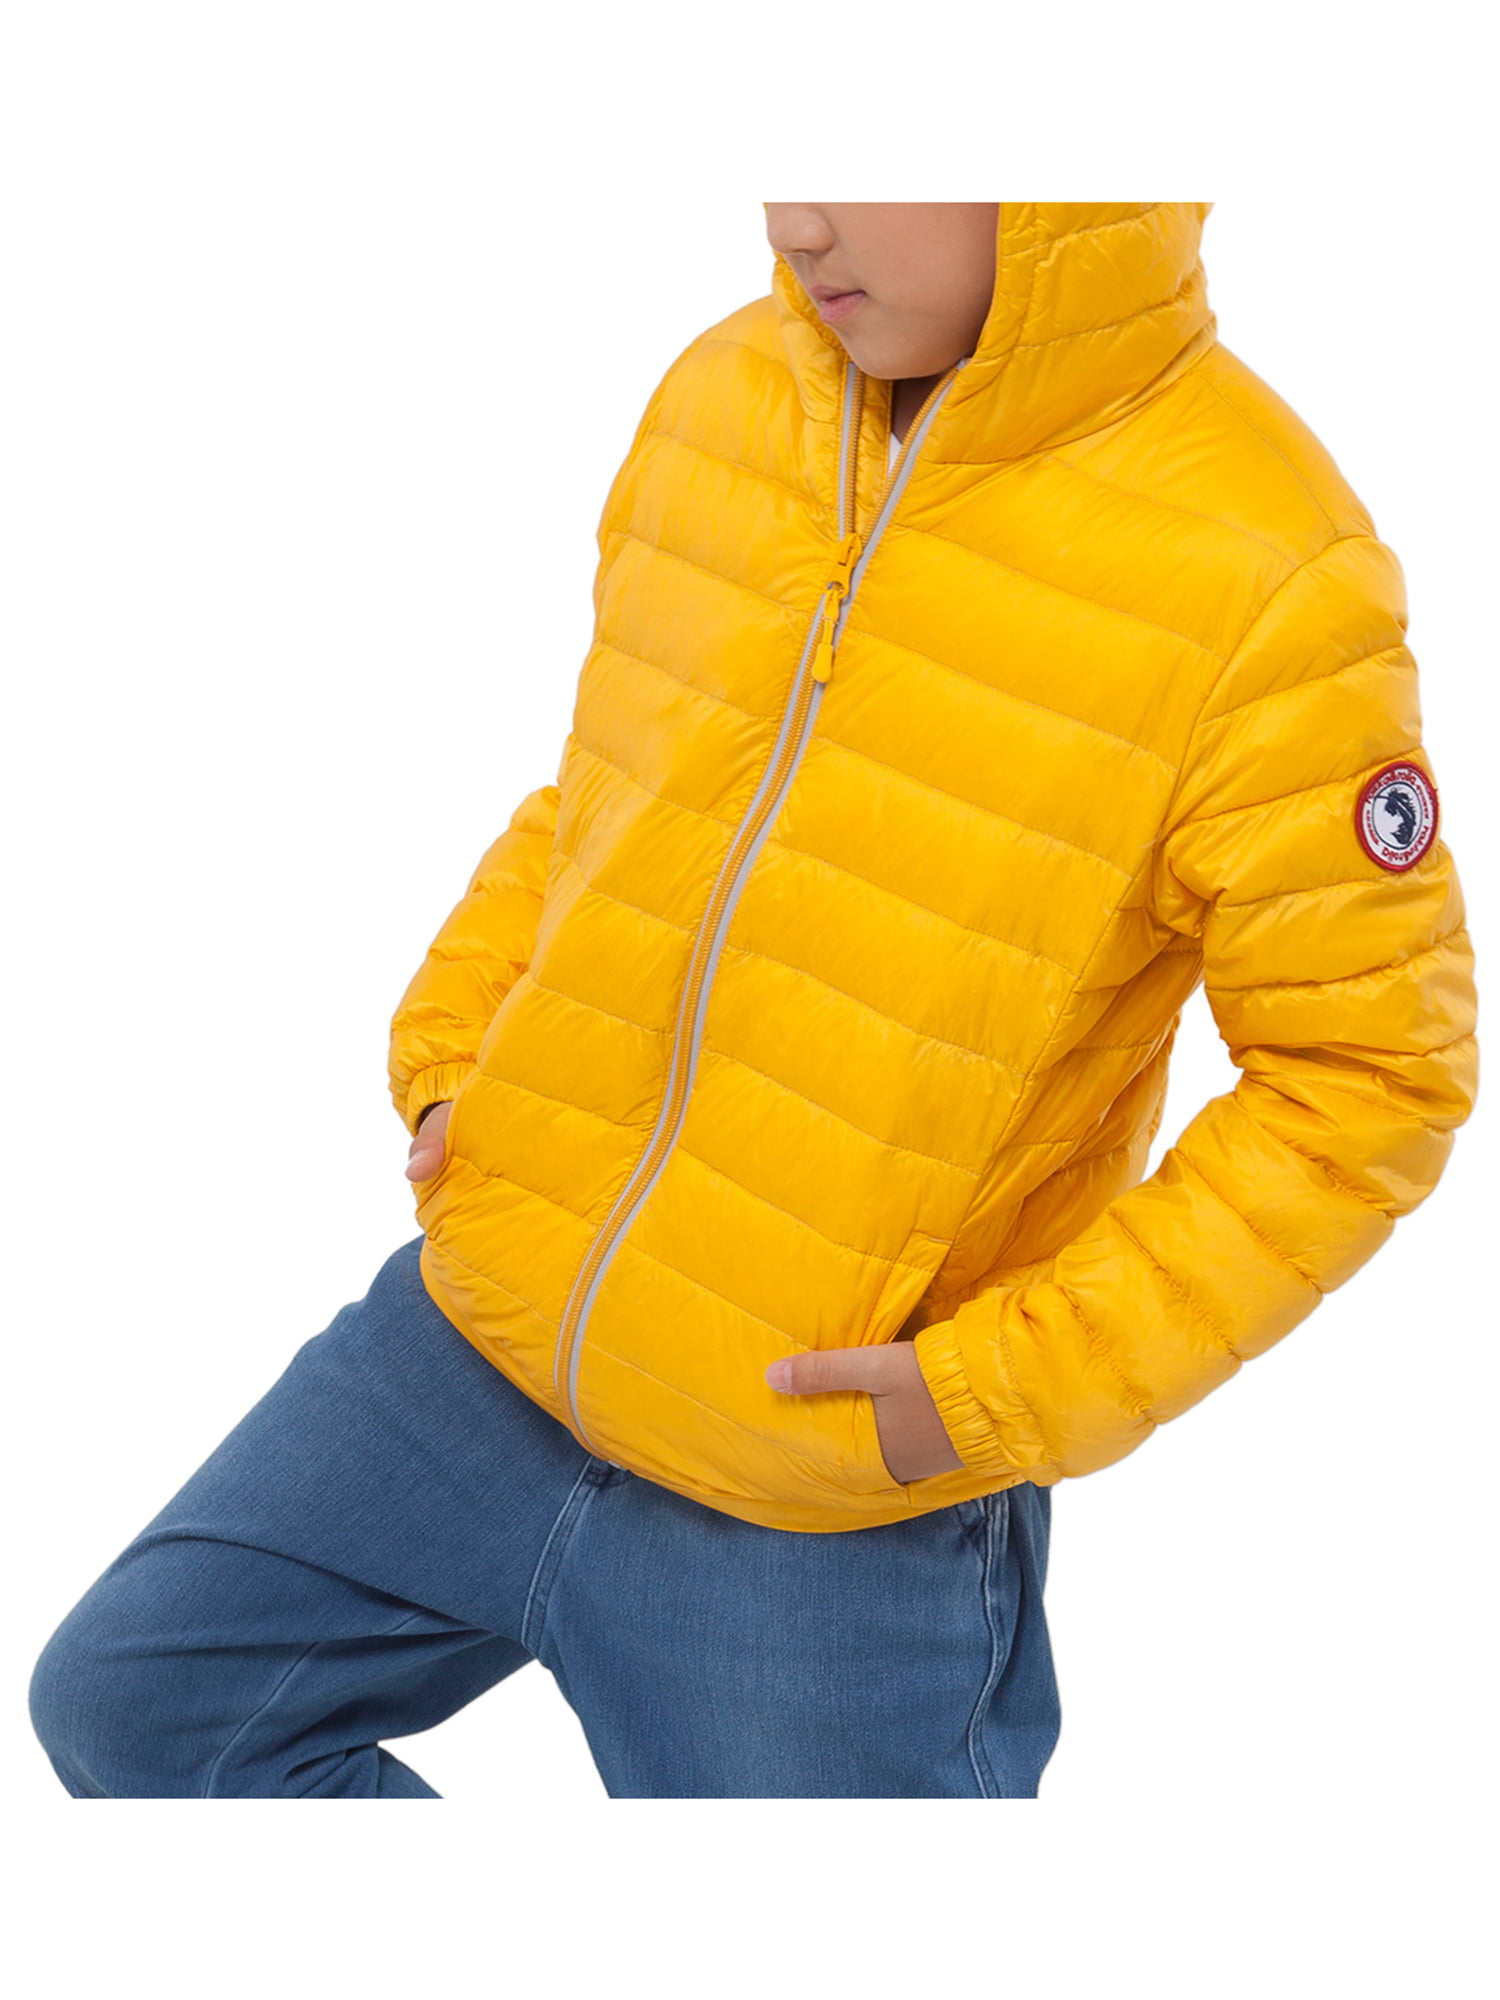 Rokka&Rolla Boys Ultra Lightweight Packable Down Puffer Jacket Coat 